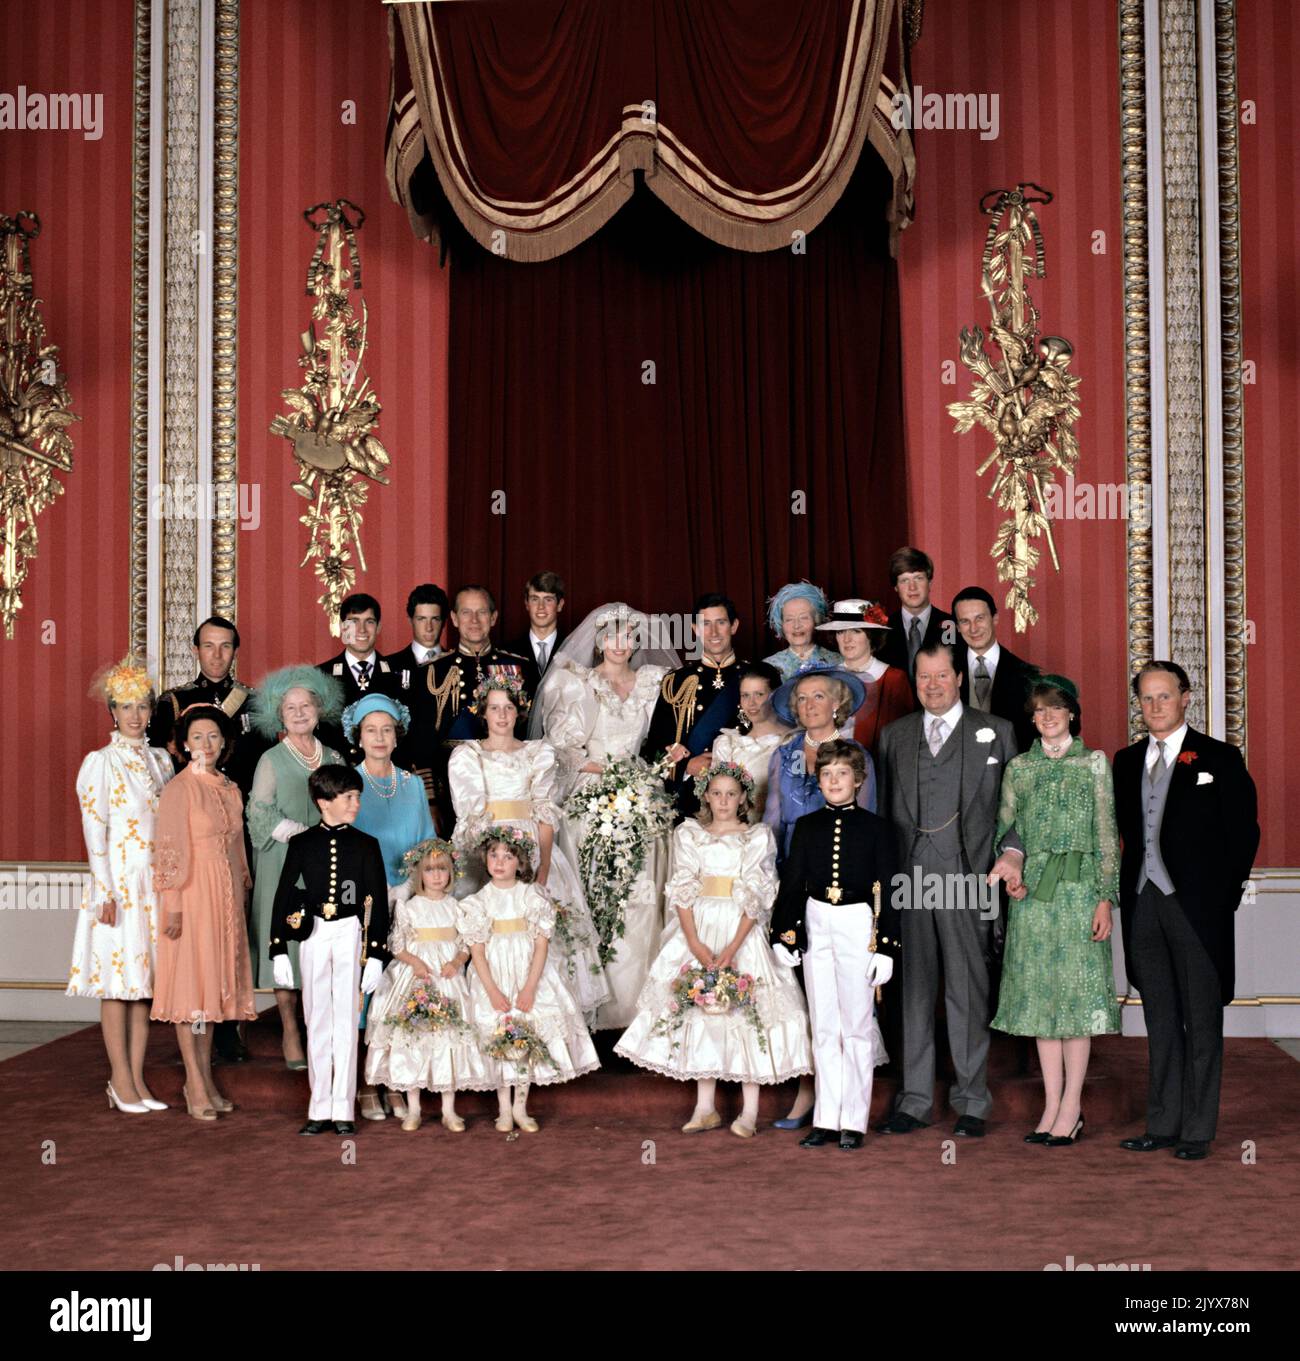 Datei-Foto vom 29/07/1981 des offiziellen Gruppenfotos bei der Hochzeit des Prinzen und der Prinzessin von Wales. Wie Buckingham Palace mitteilte, starb die Königin heute Nachmittag friedlich in Balmoral. Ausgabedatum: Donnerstag, 8. September 2022. Stockfoto